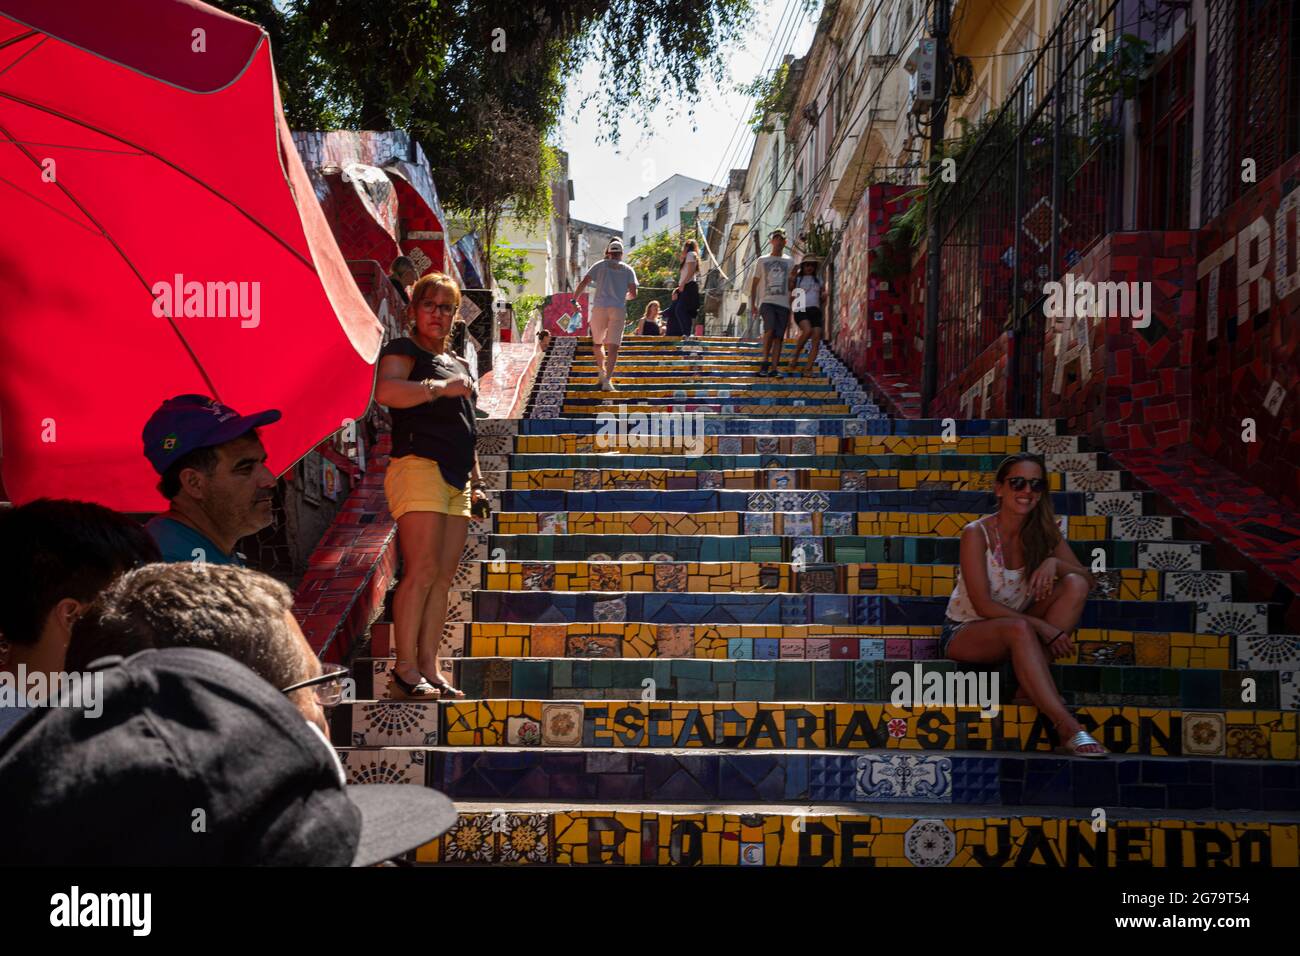 Las escaleras Selaron (o escaleras Lapa) que están cubiertas por azulejos coloridos de todo el mundo, es una de las principales atracciones turísticas de Río de Janeiro. Foto de stock